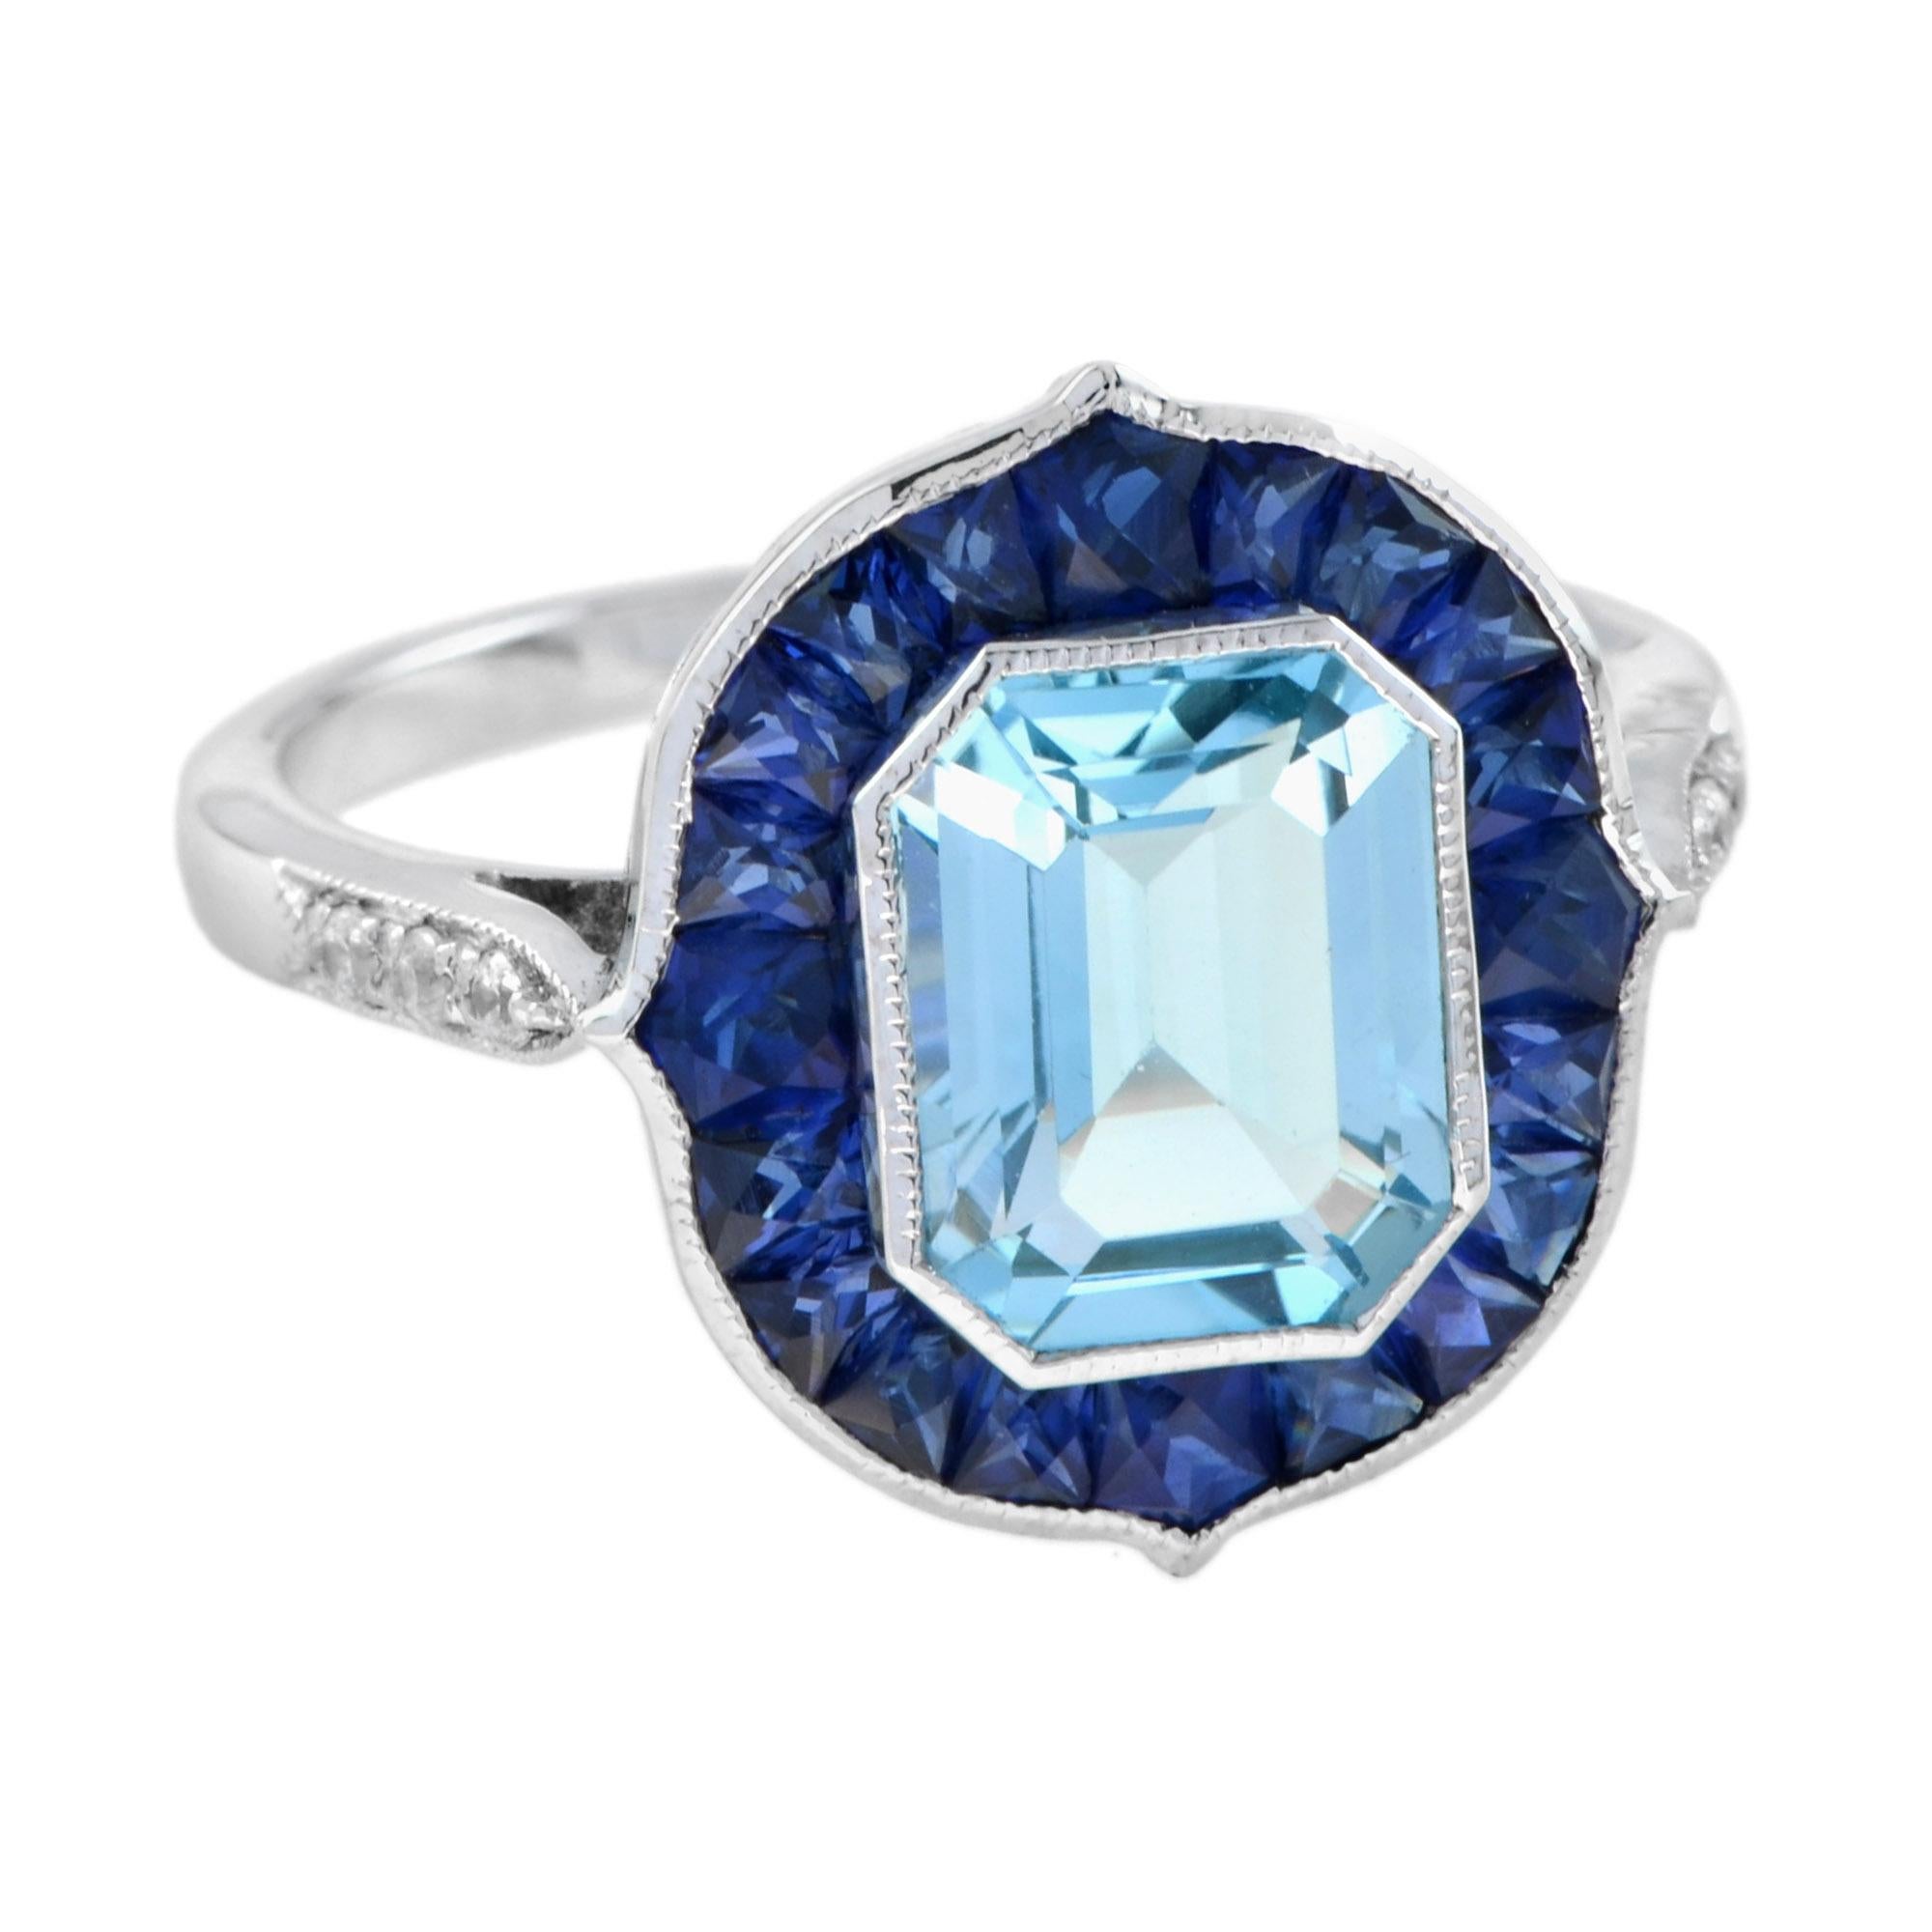 Diese Kreation ist exquisit. Das Herzstück dieses Rings ist ein atemberaubender Blautopas im Smaragdschliff, umrahmt von einer zarten Maserung. Der Blautopas in der Mitte wird von blauen Saphiren im französischen Schliff akzentuiert. Dies ist ein